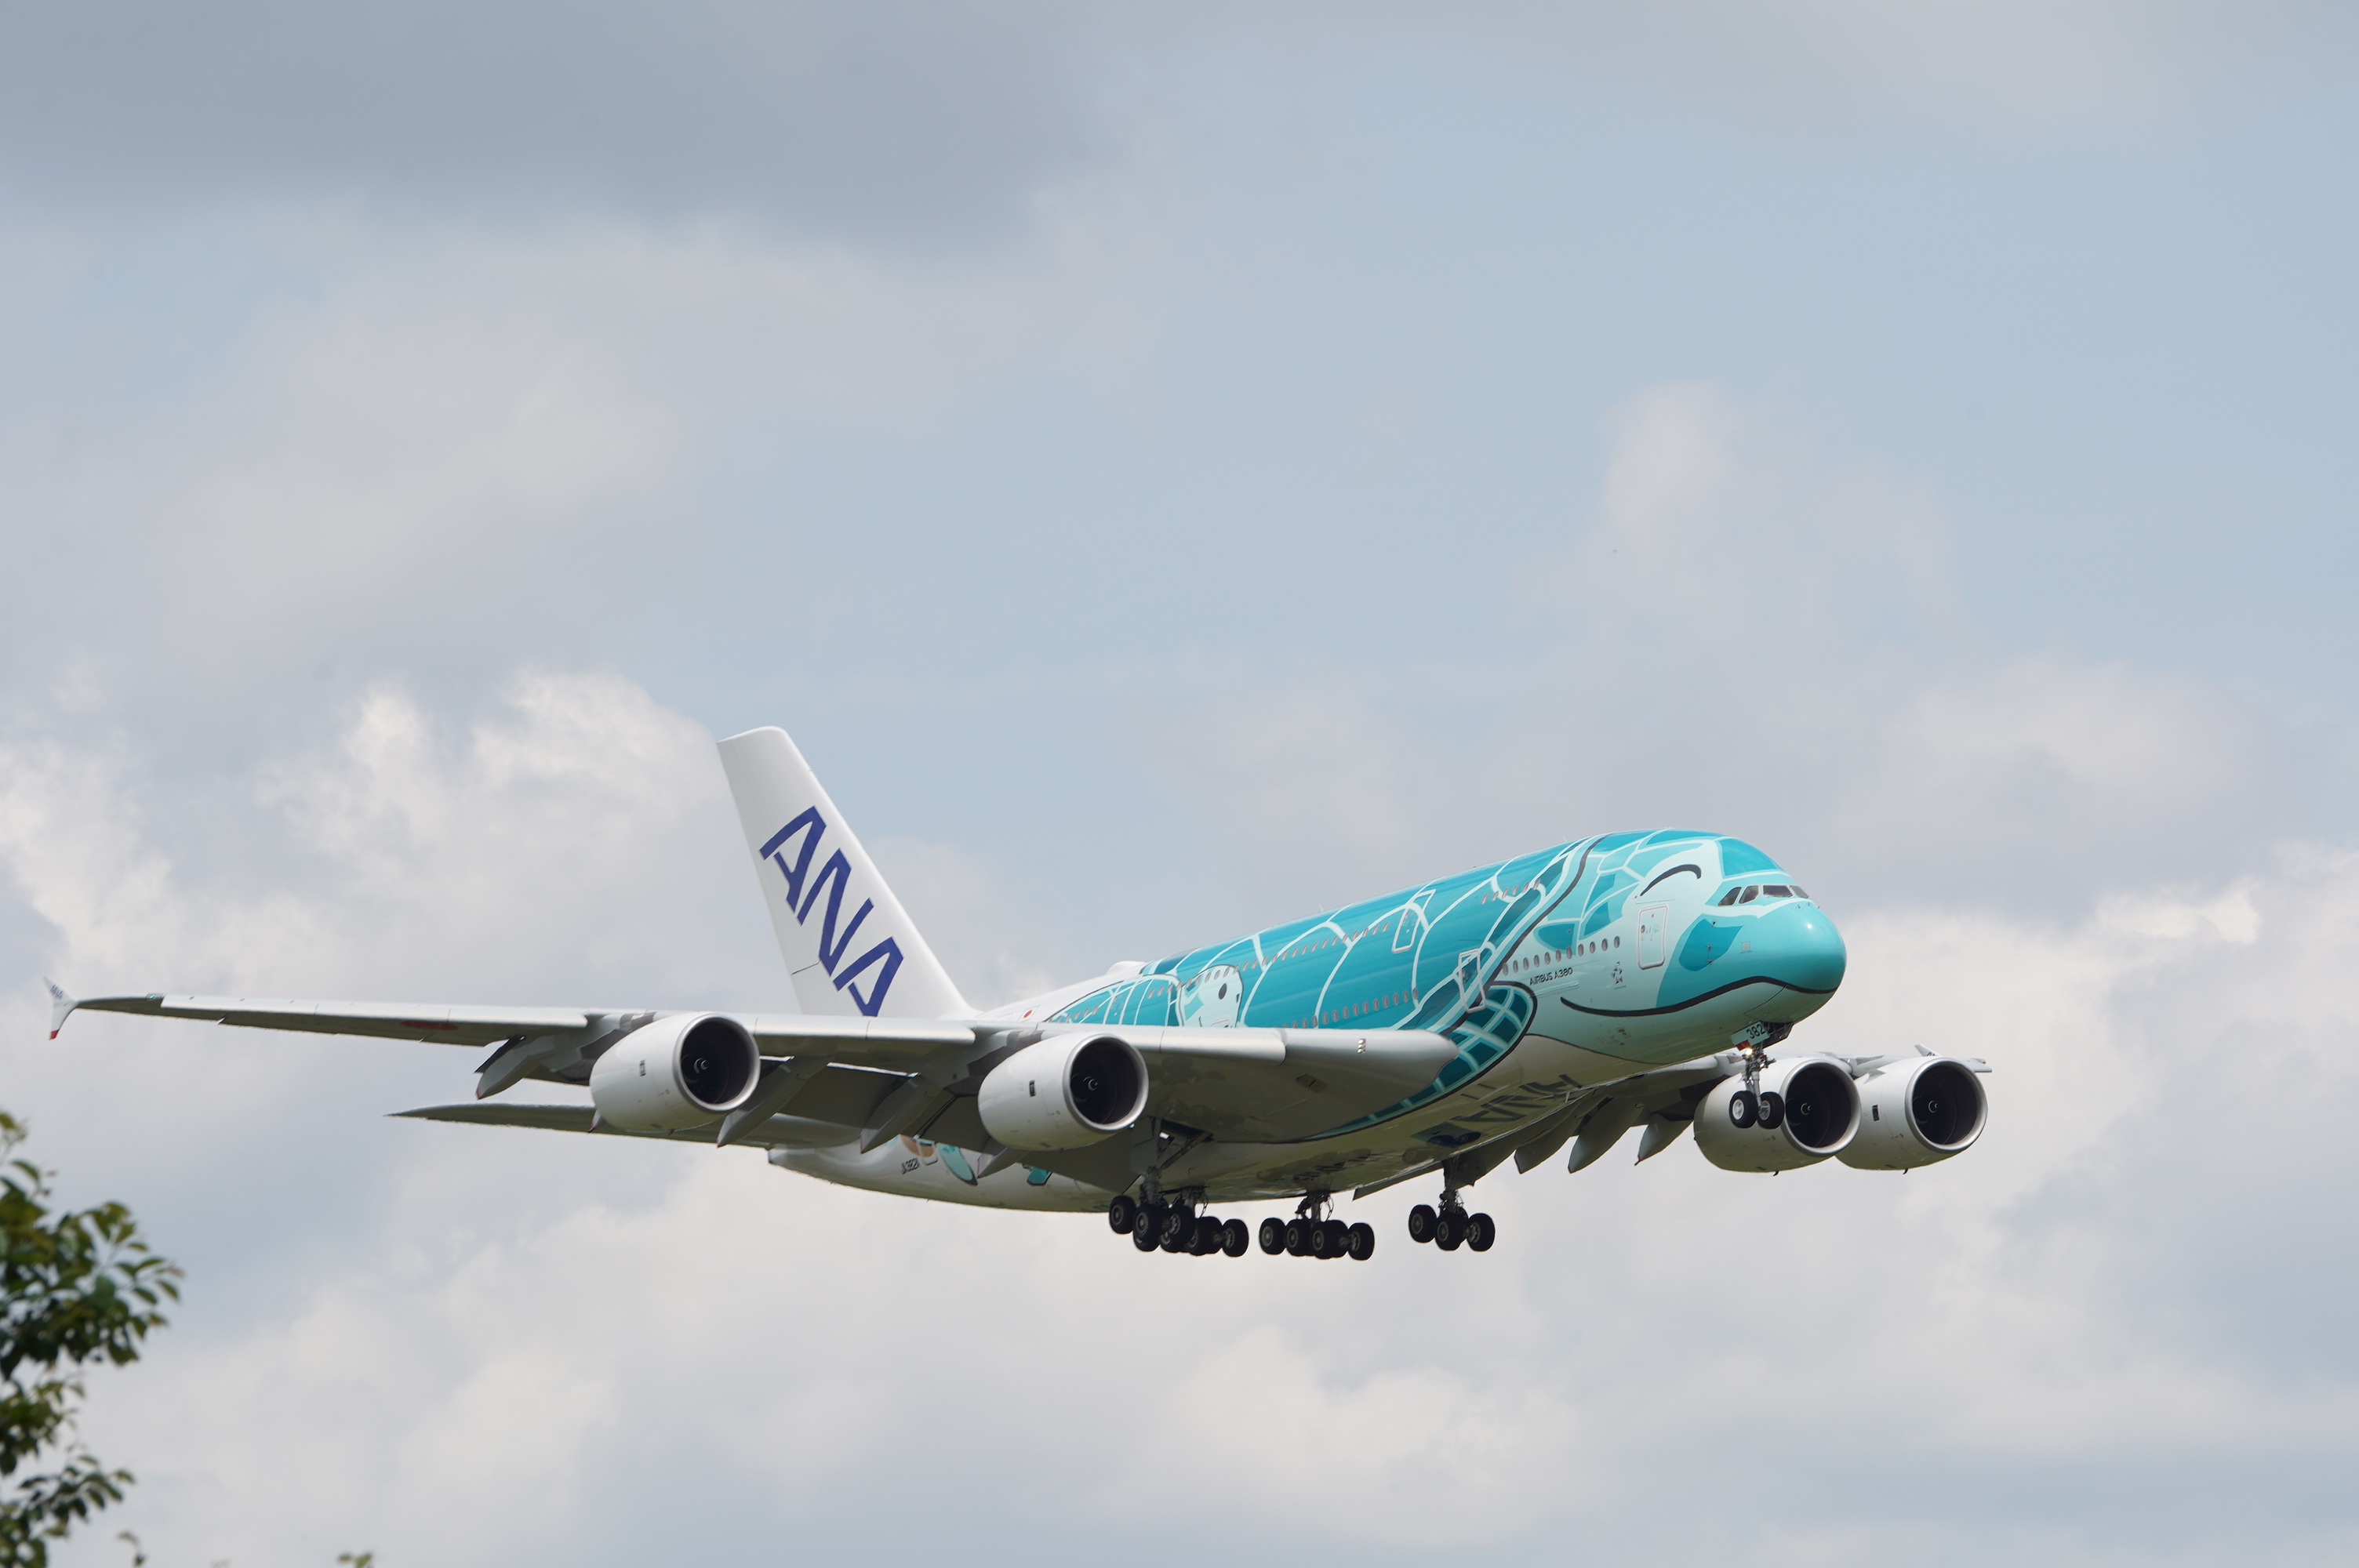 2019 5 17 18 航空の動き Ana A380 フライングホヌ 2機目到着 1機目羽田や新千歳に立ち寄りetc